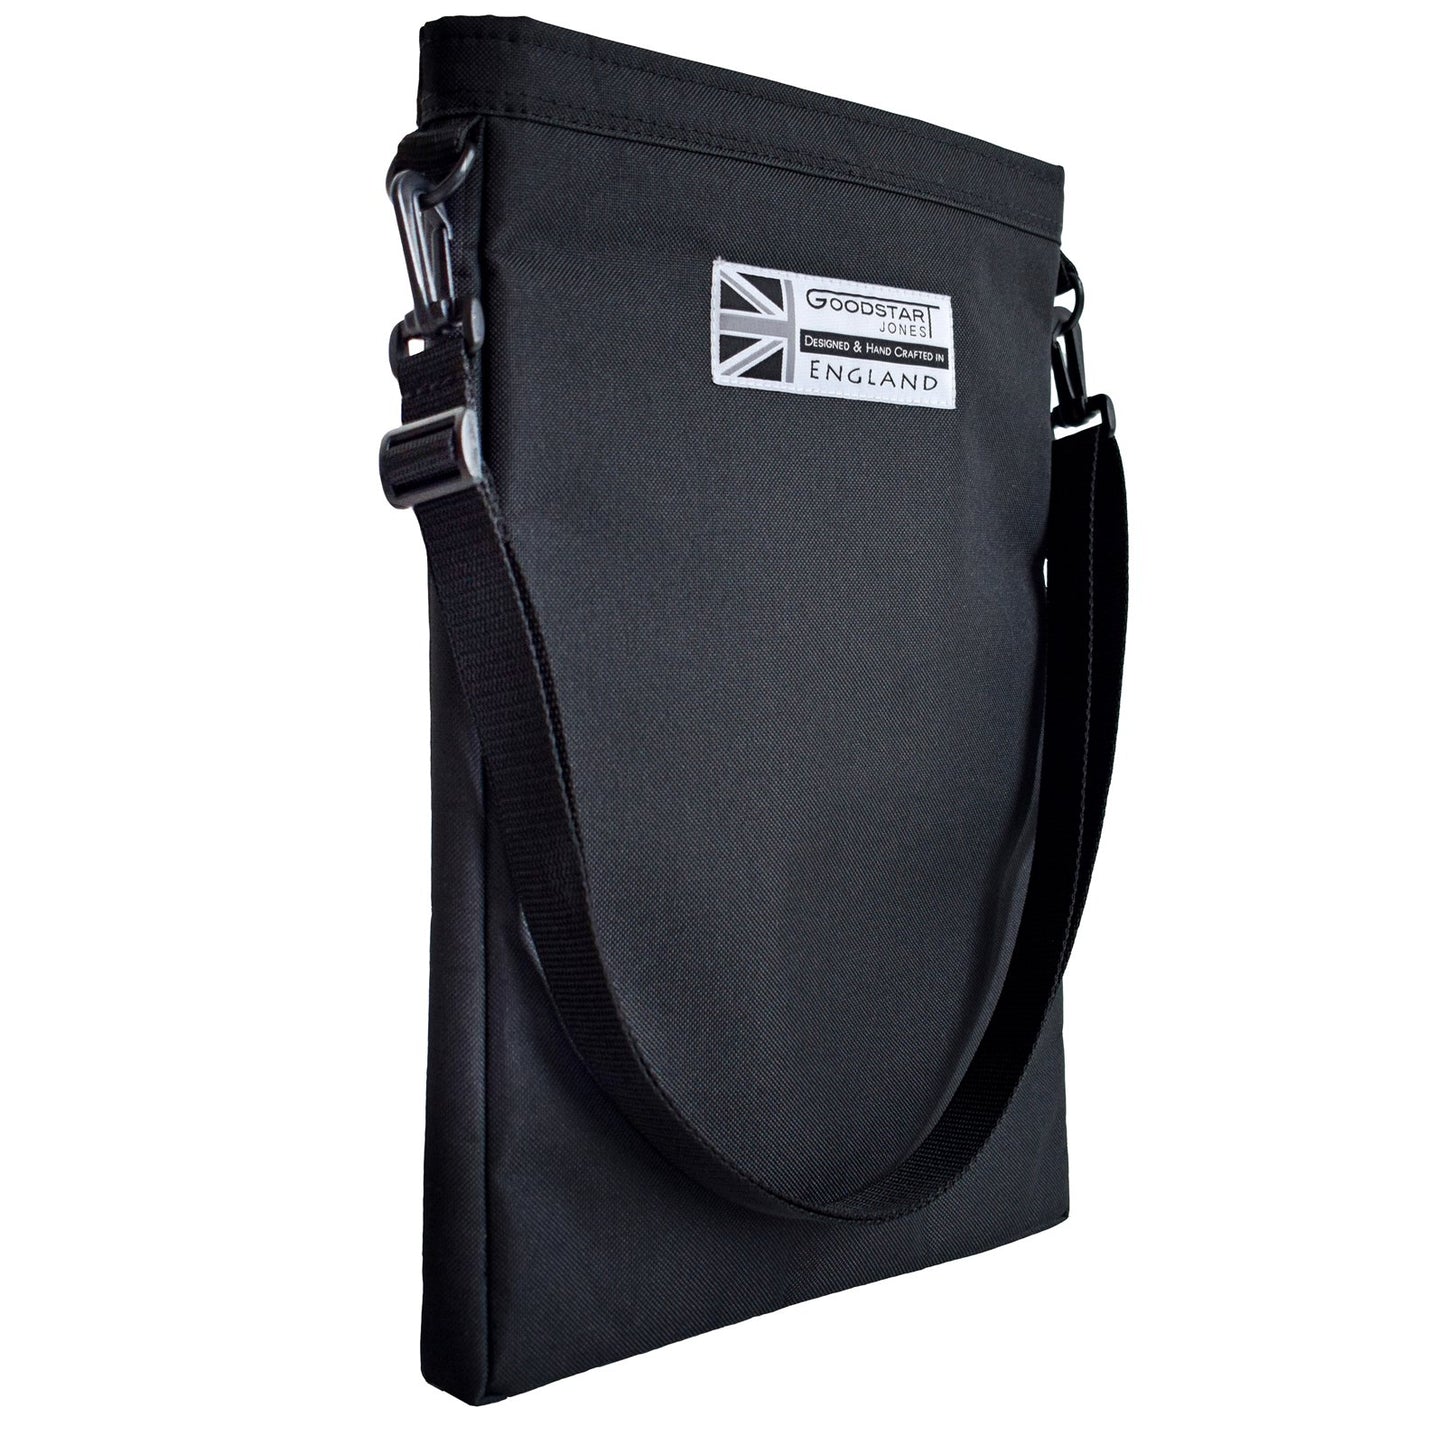 Woodsack XL Backpack | BLACK